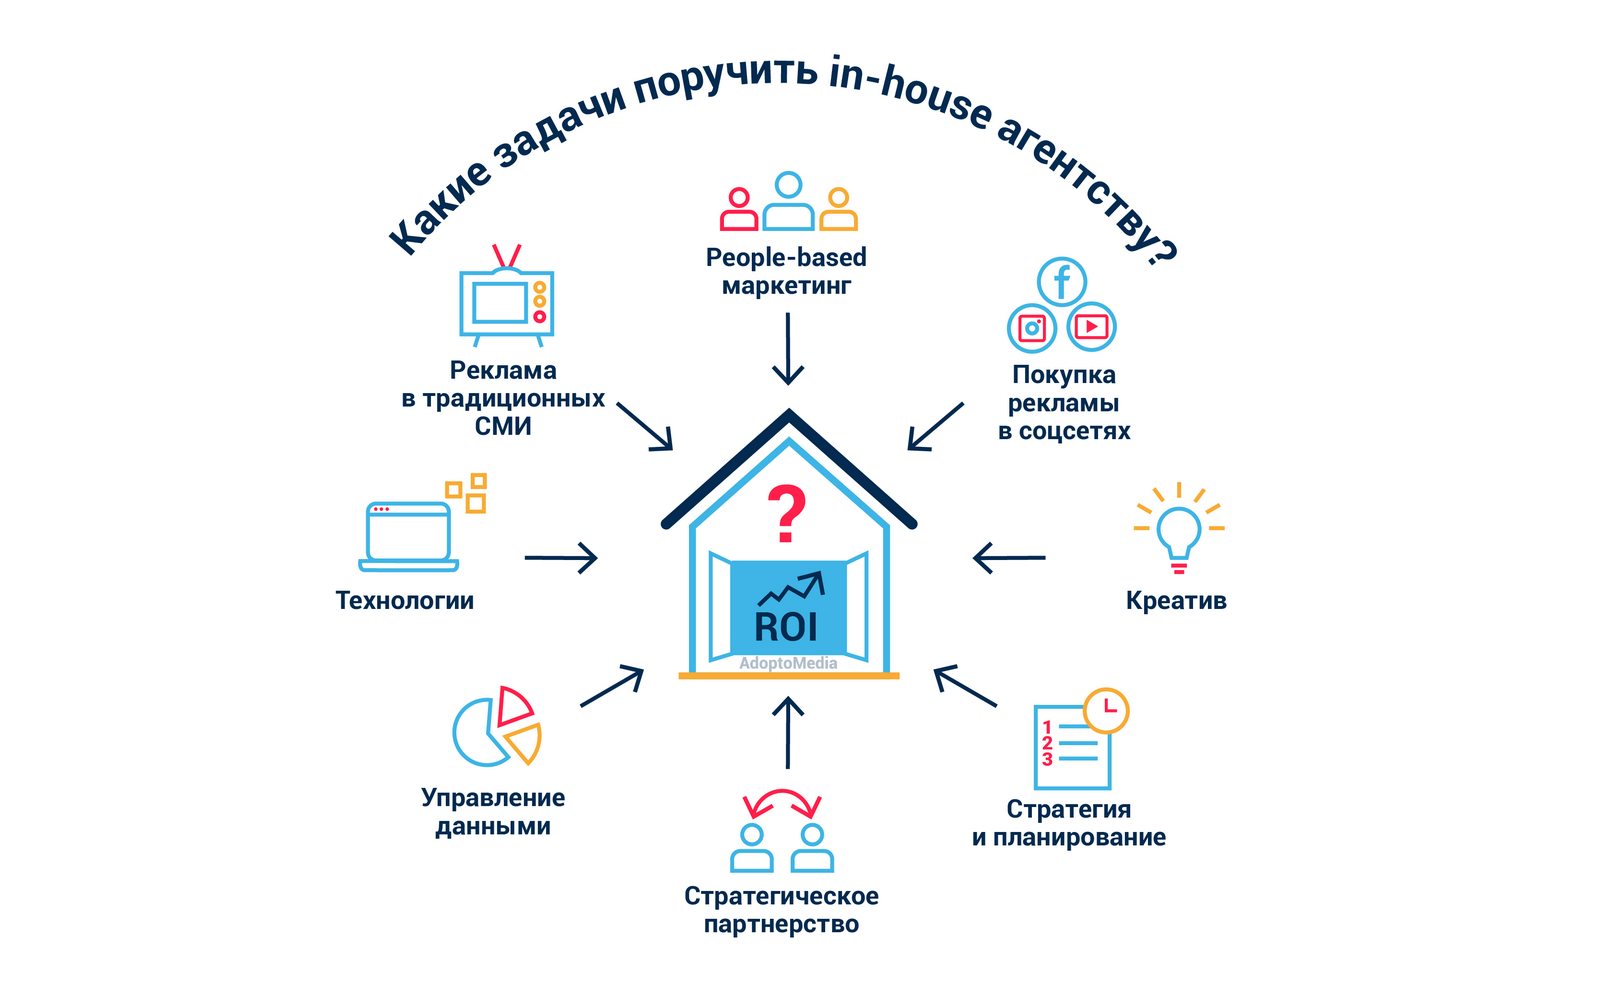 In-house агентство, цифровая трансформация, ROI, подсчет ROMI, маркетинговые тренды, покупка рекламы, автоматизация маркетинга